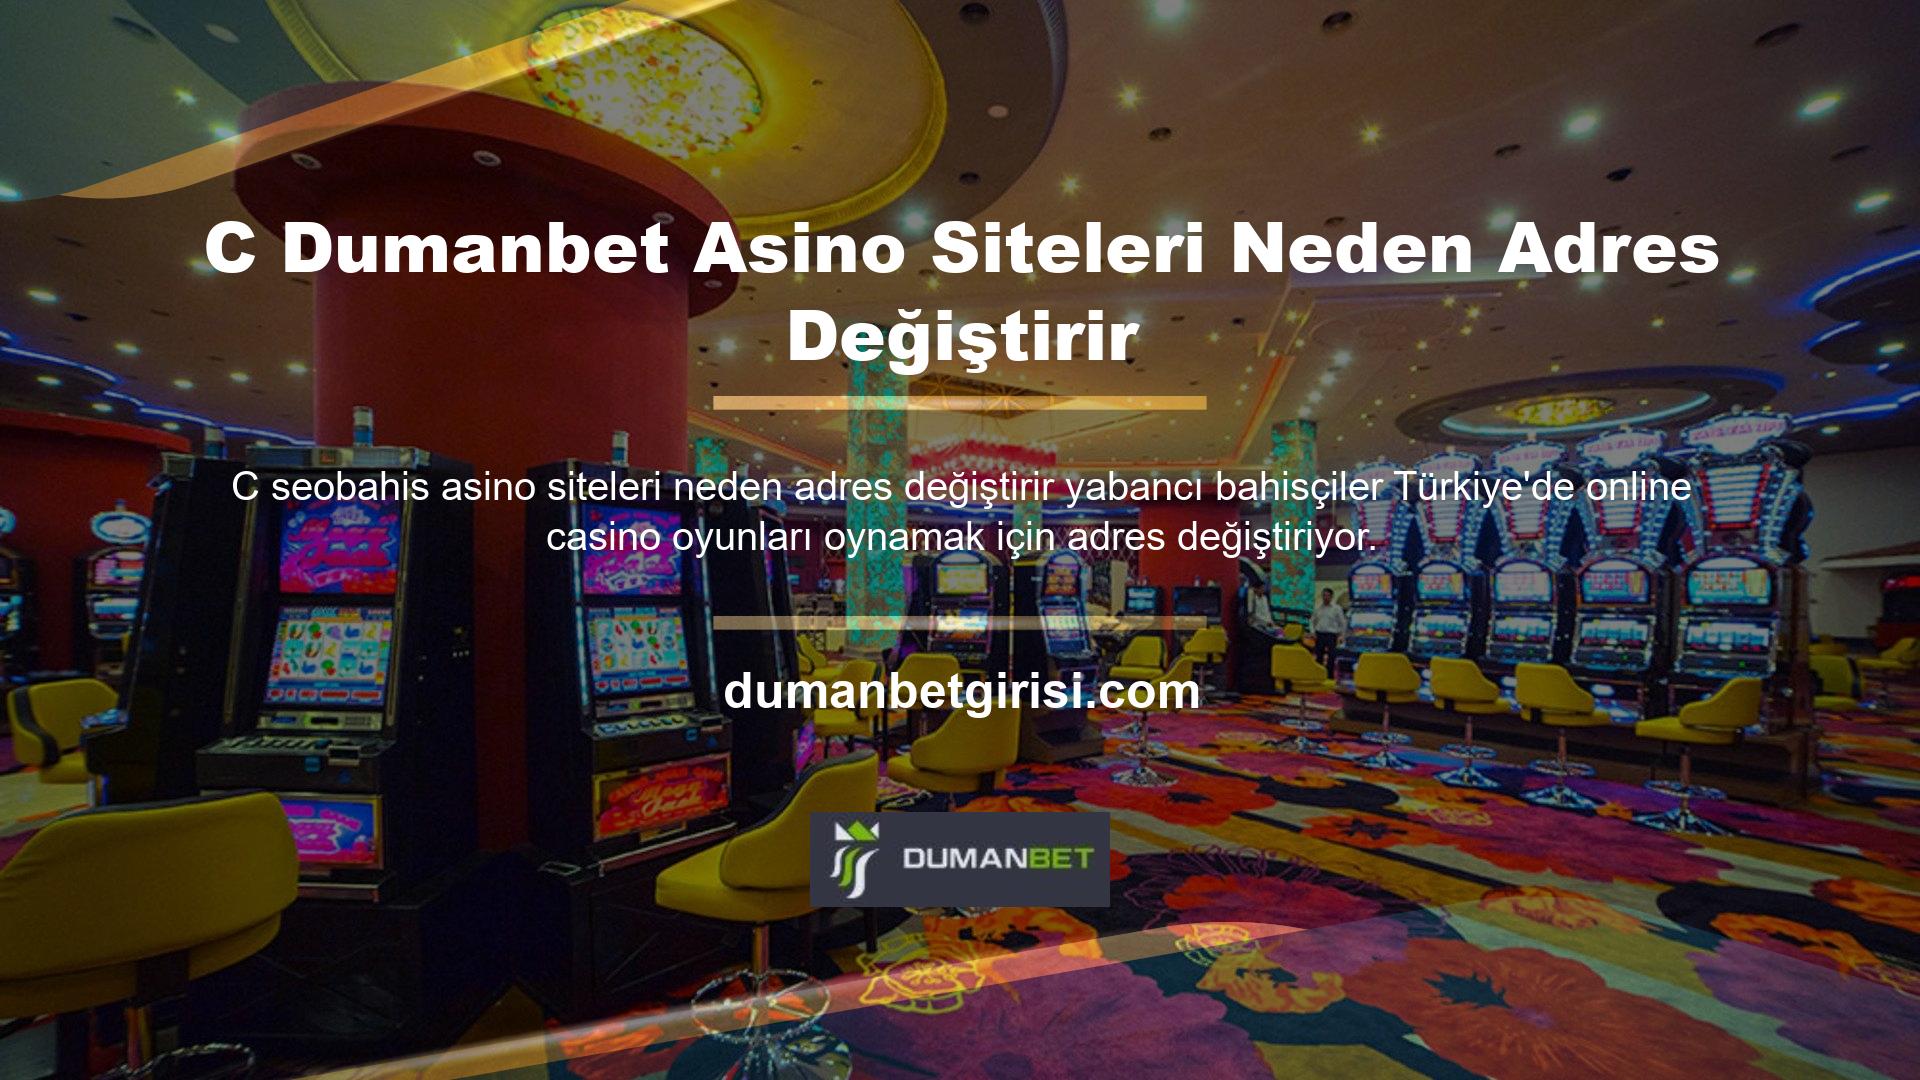 Türkiye'deki canlı casinolarda veya yasal casino sitelerinde casino veya diğer oyunları oynayamazsınız